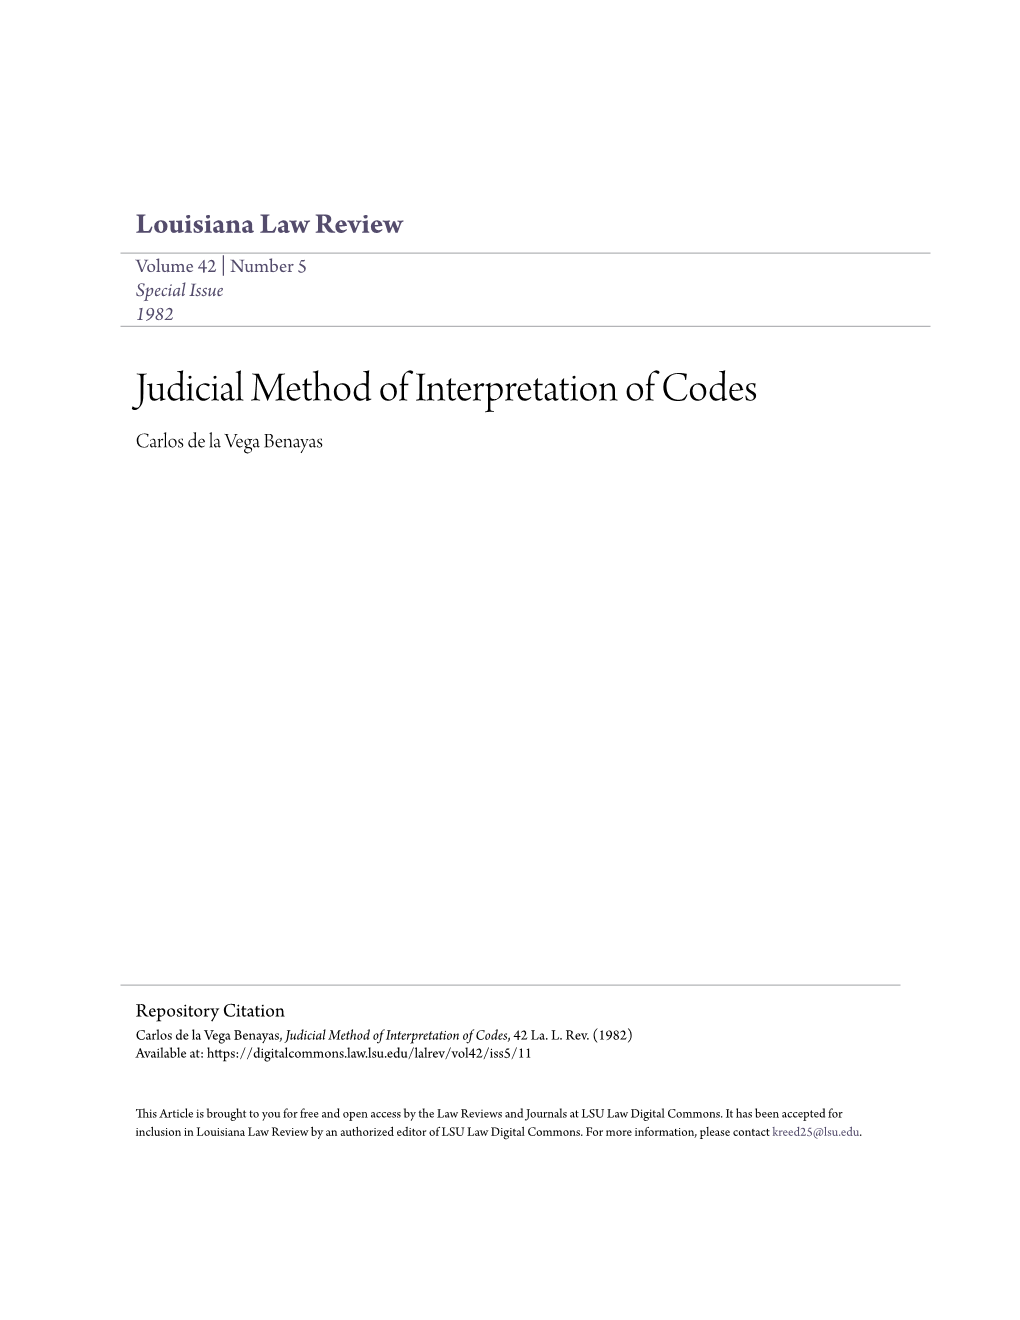 Judicial Method of Interpretation of Codes Carlos De La Vega Benayas